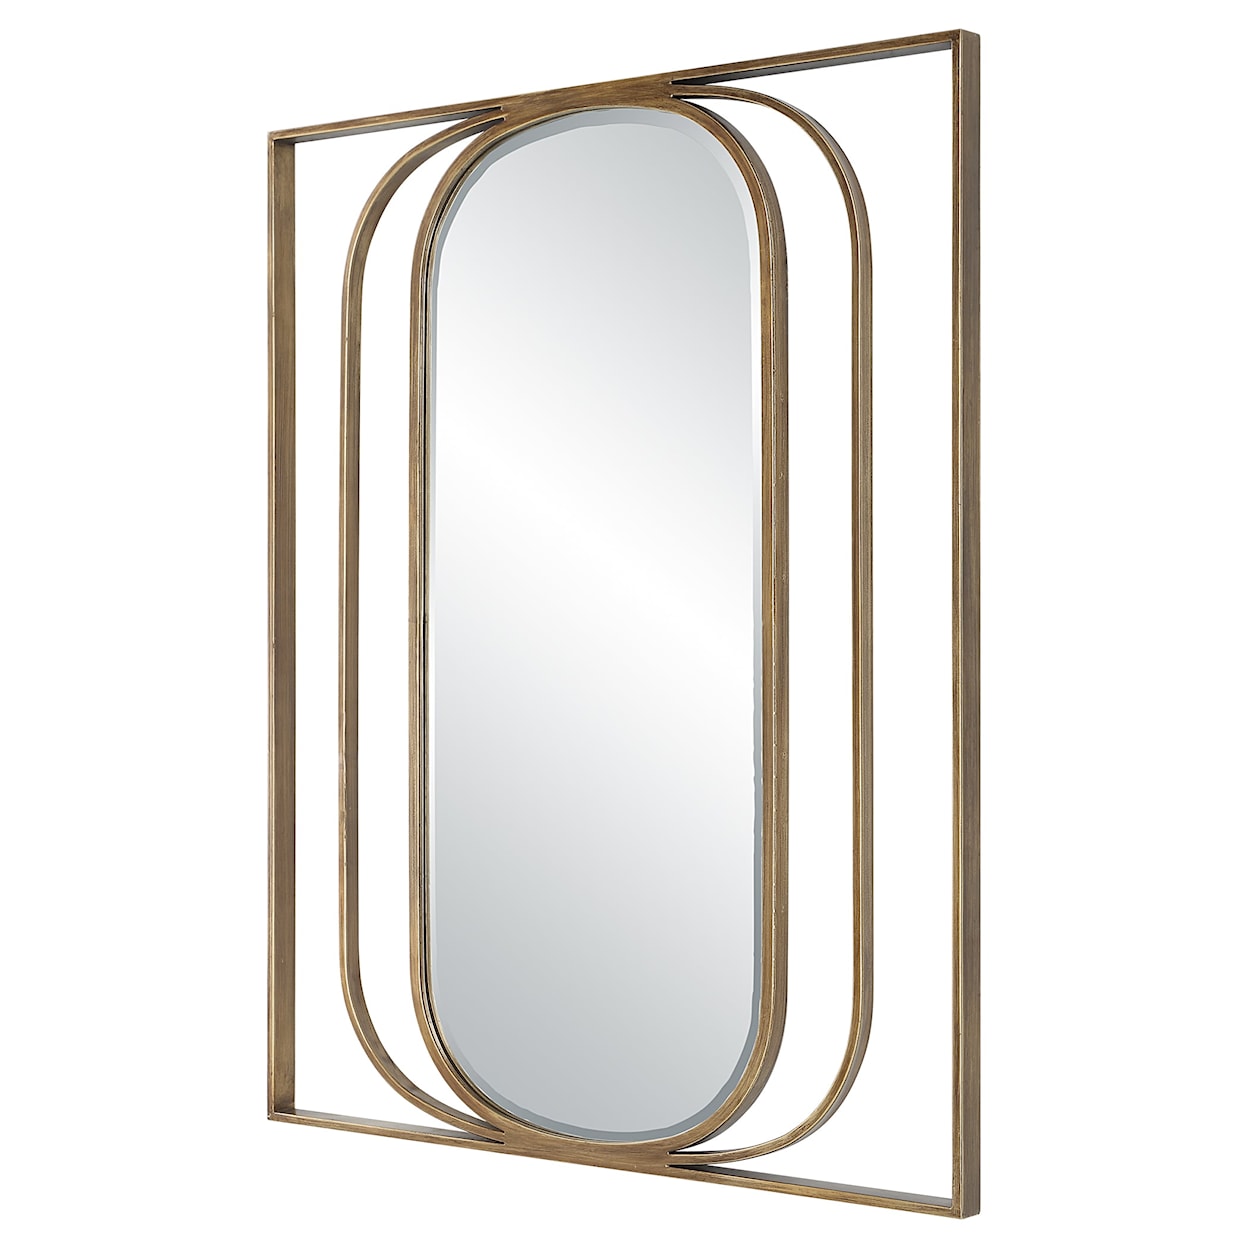 Uttermost Replicate Replicate Contemporary Oval Mirror